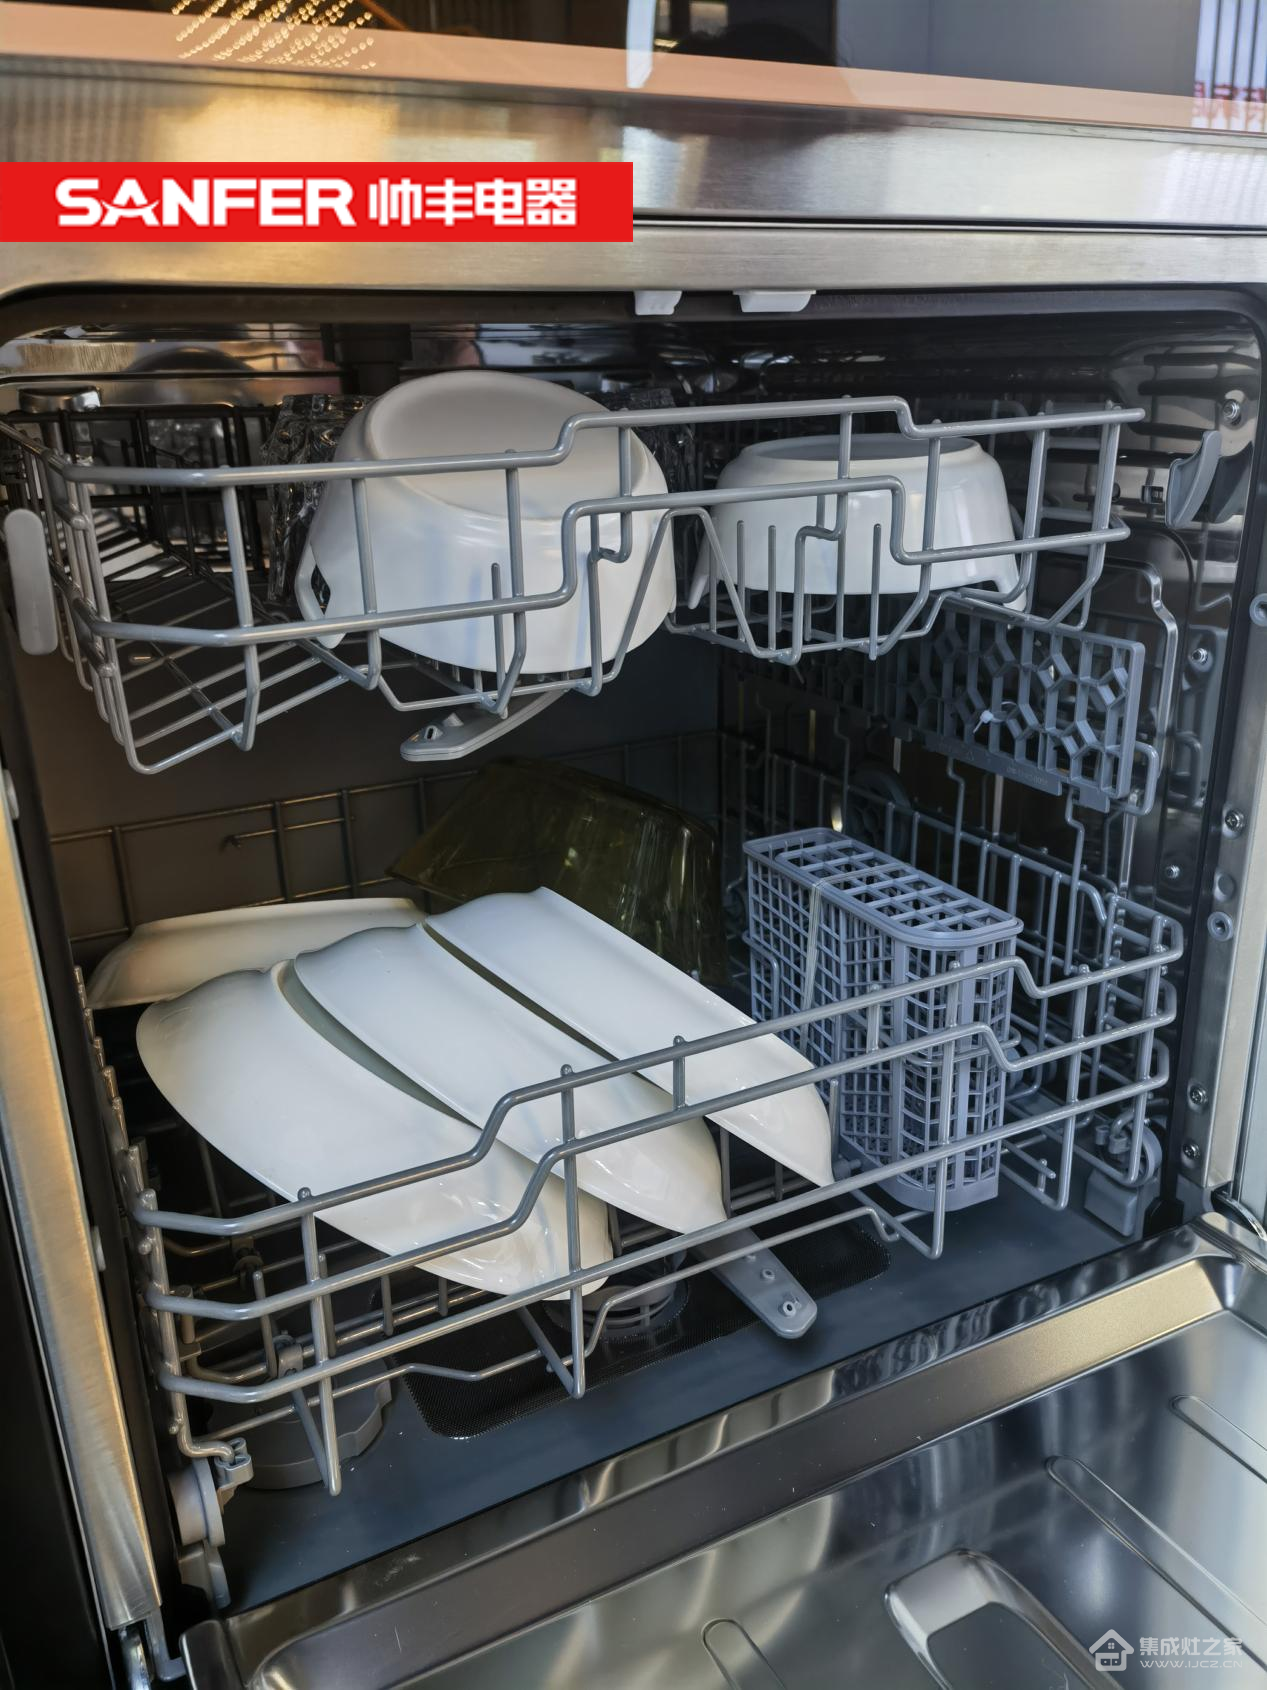 嵌入式洗碗机VS洗碗机集成水槽，哪个更好？看看这篇文章怎么说